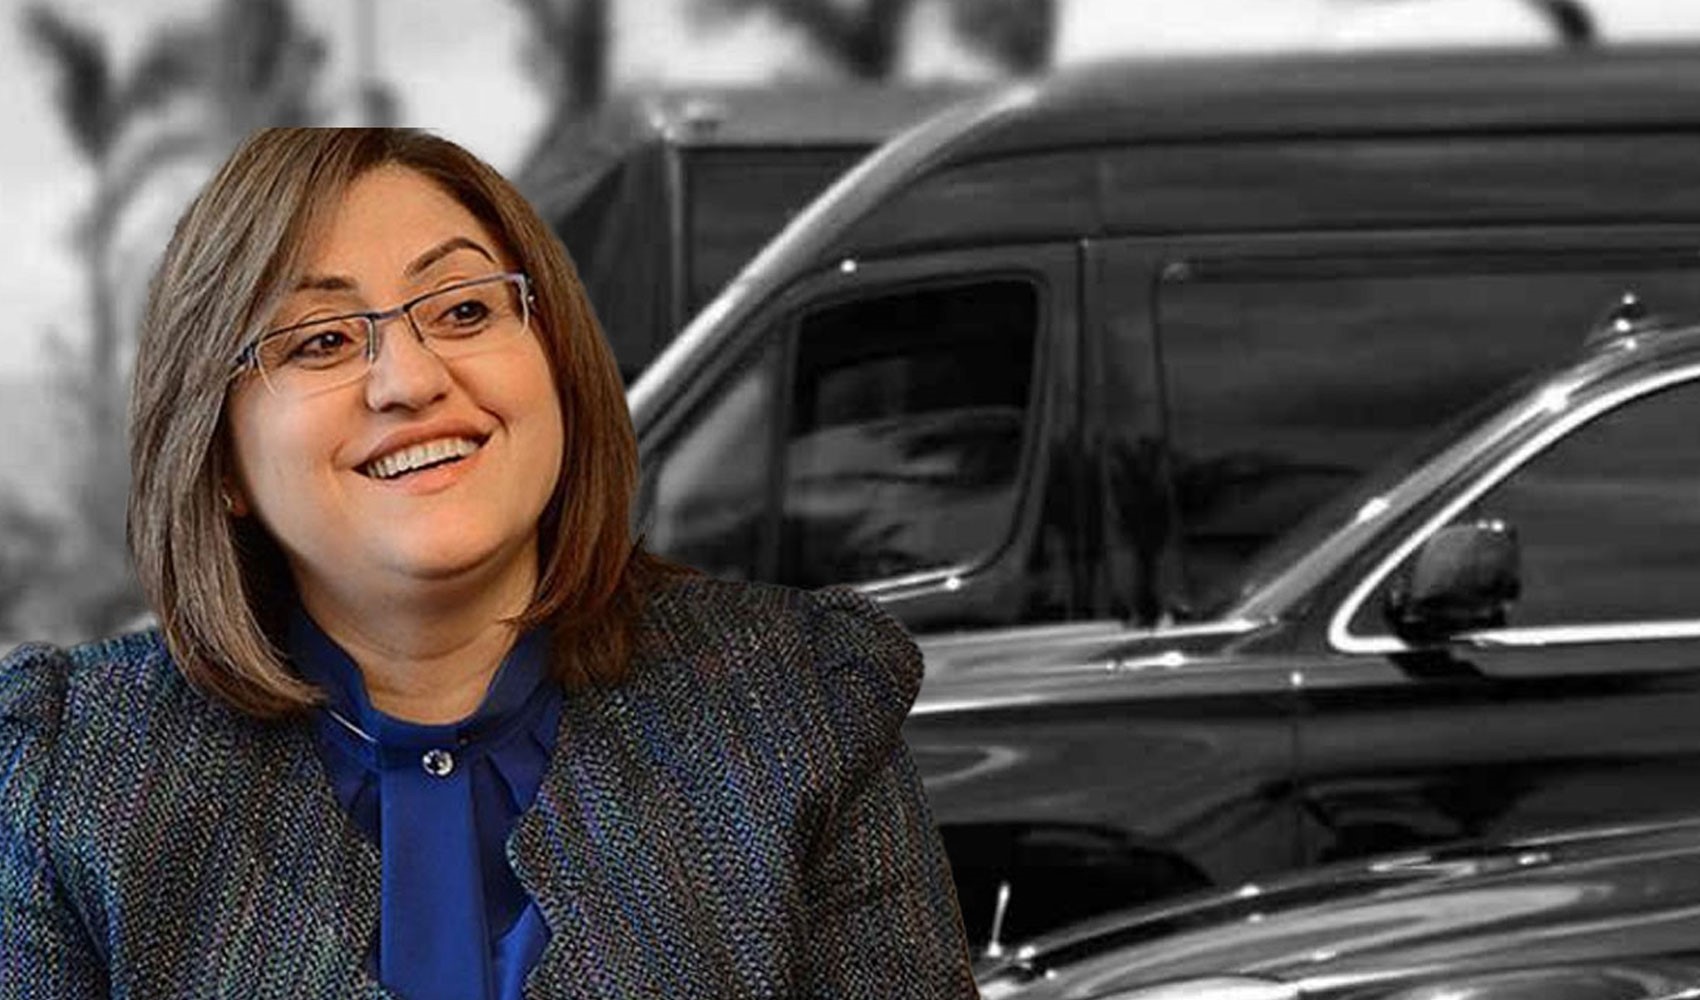 AKP’li Fatma Şahin’in lüks araç filosu: Tasarruf paketi açıklanmadan hemen önce 63 lüks araç kiralamış!